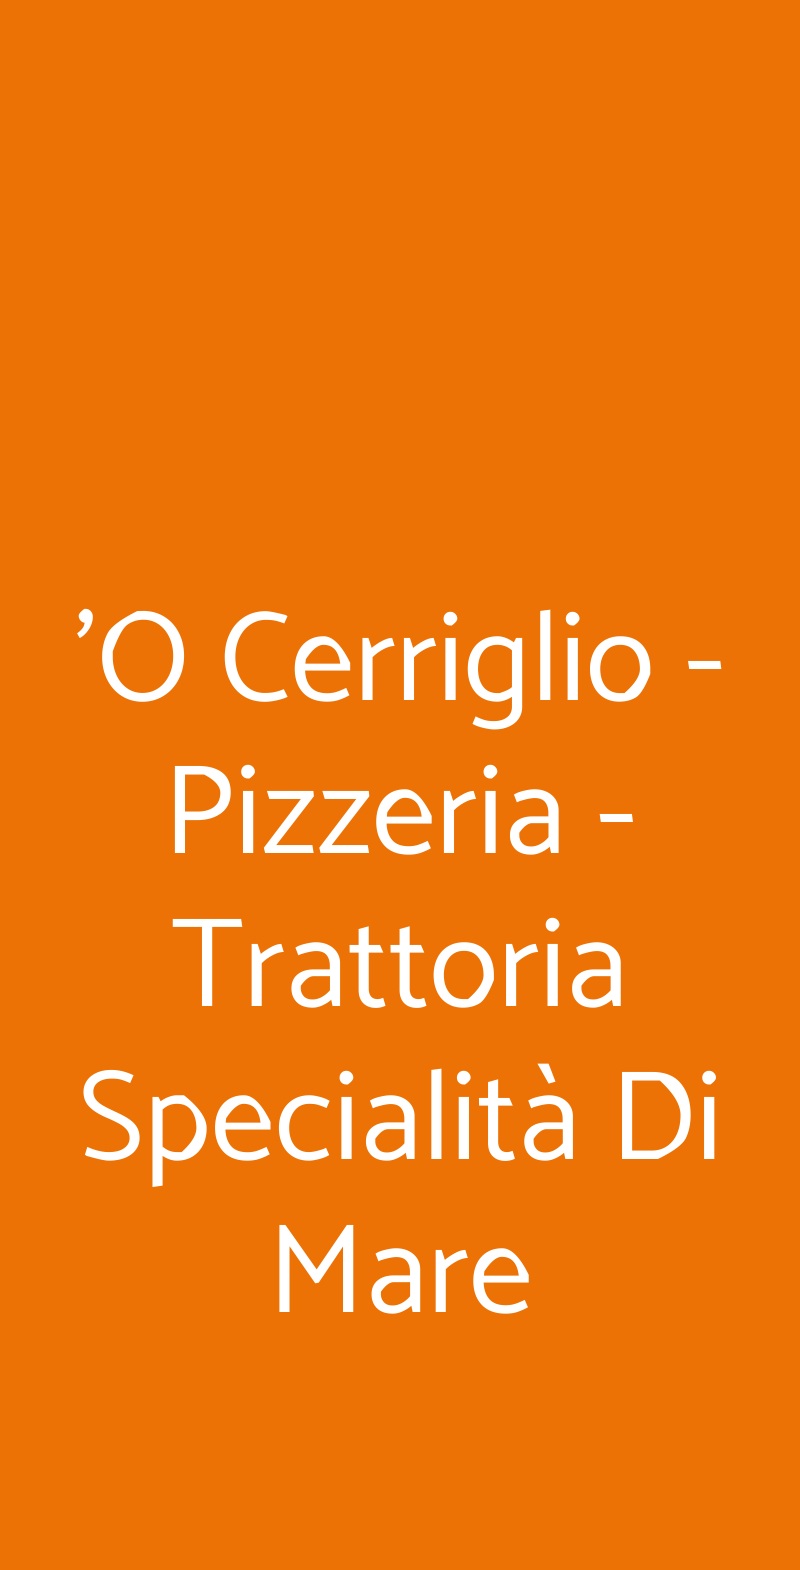 'O Cerriglio - Pizzeria - Trattoria Specialità Di Mare Napoli menù 1 pagina